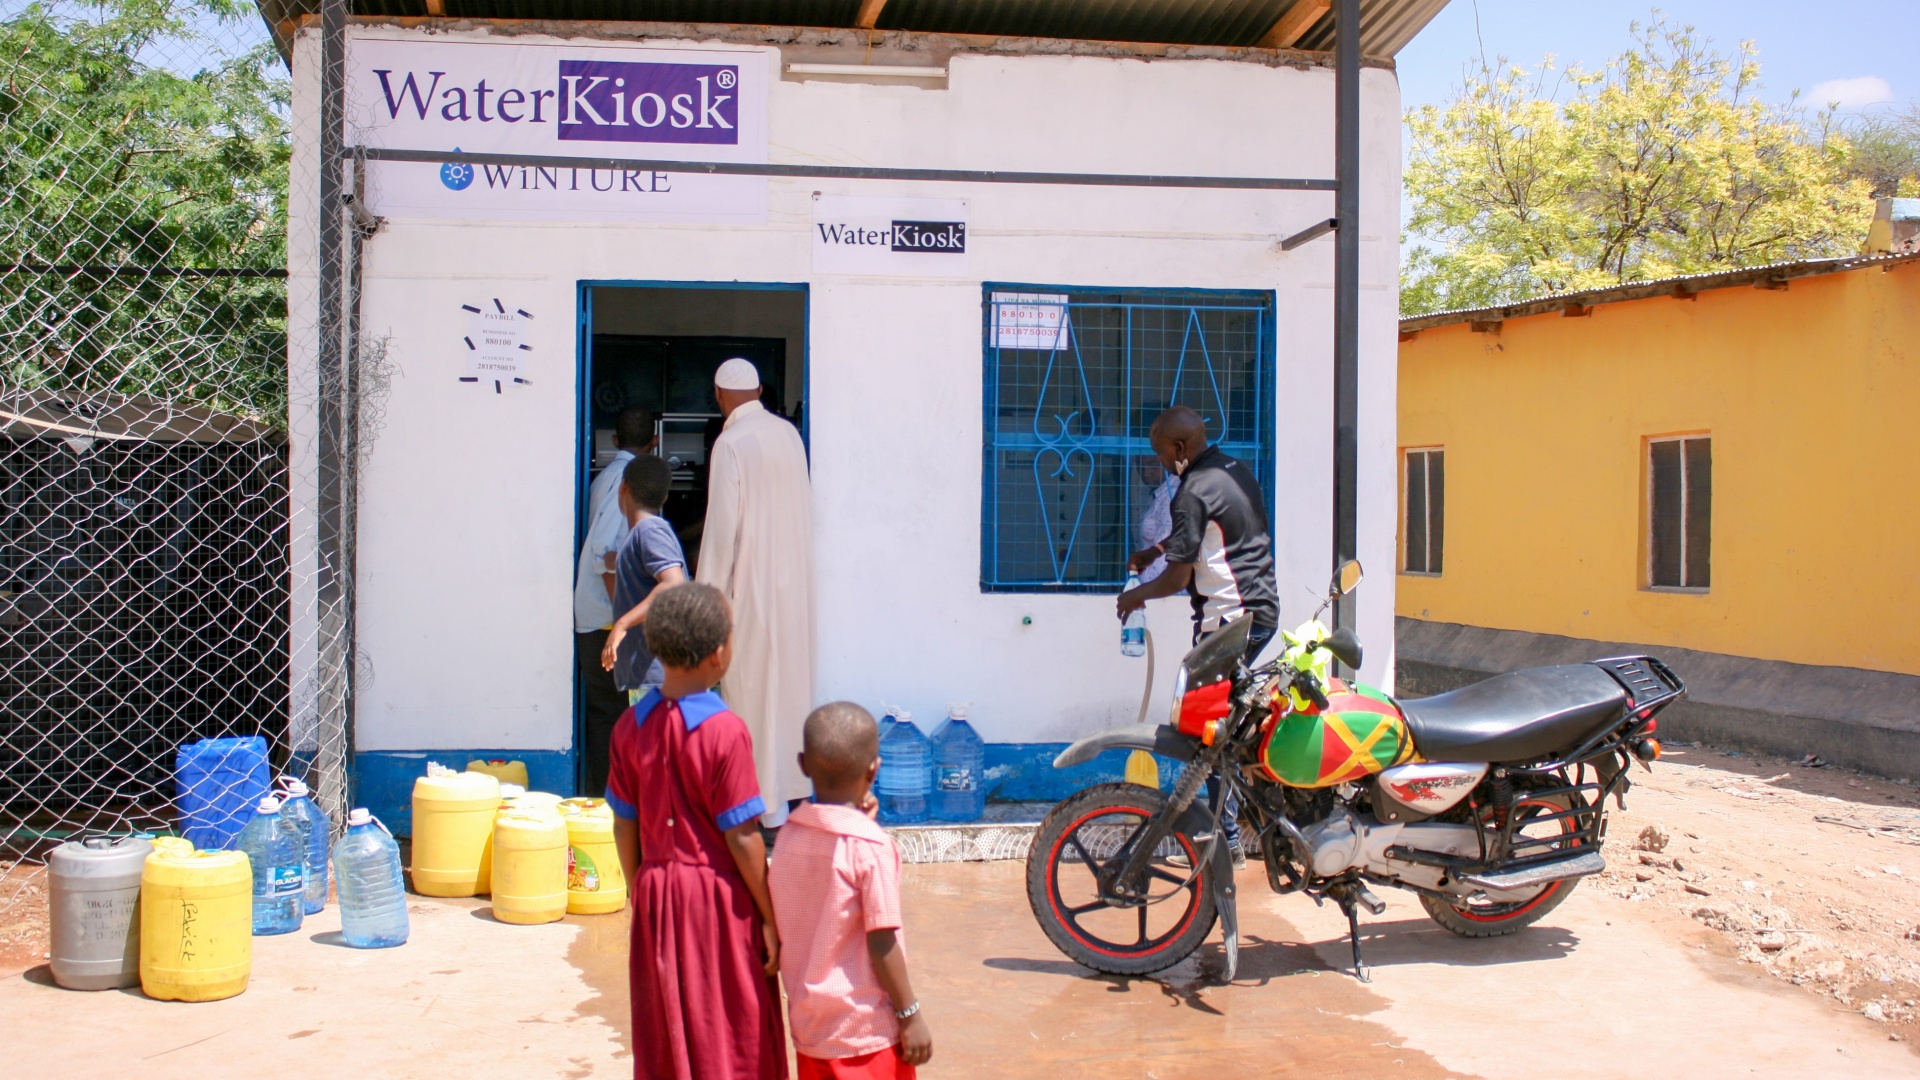 Ein Junger Kenianer füllt am WaterKiosk eine Falsche Trinkwasser ab. Sein Motorrad steht vor dem WaterKiosk und zwei kleine Kinder schauen zu.